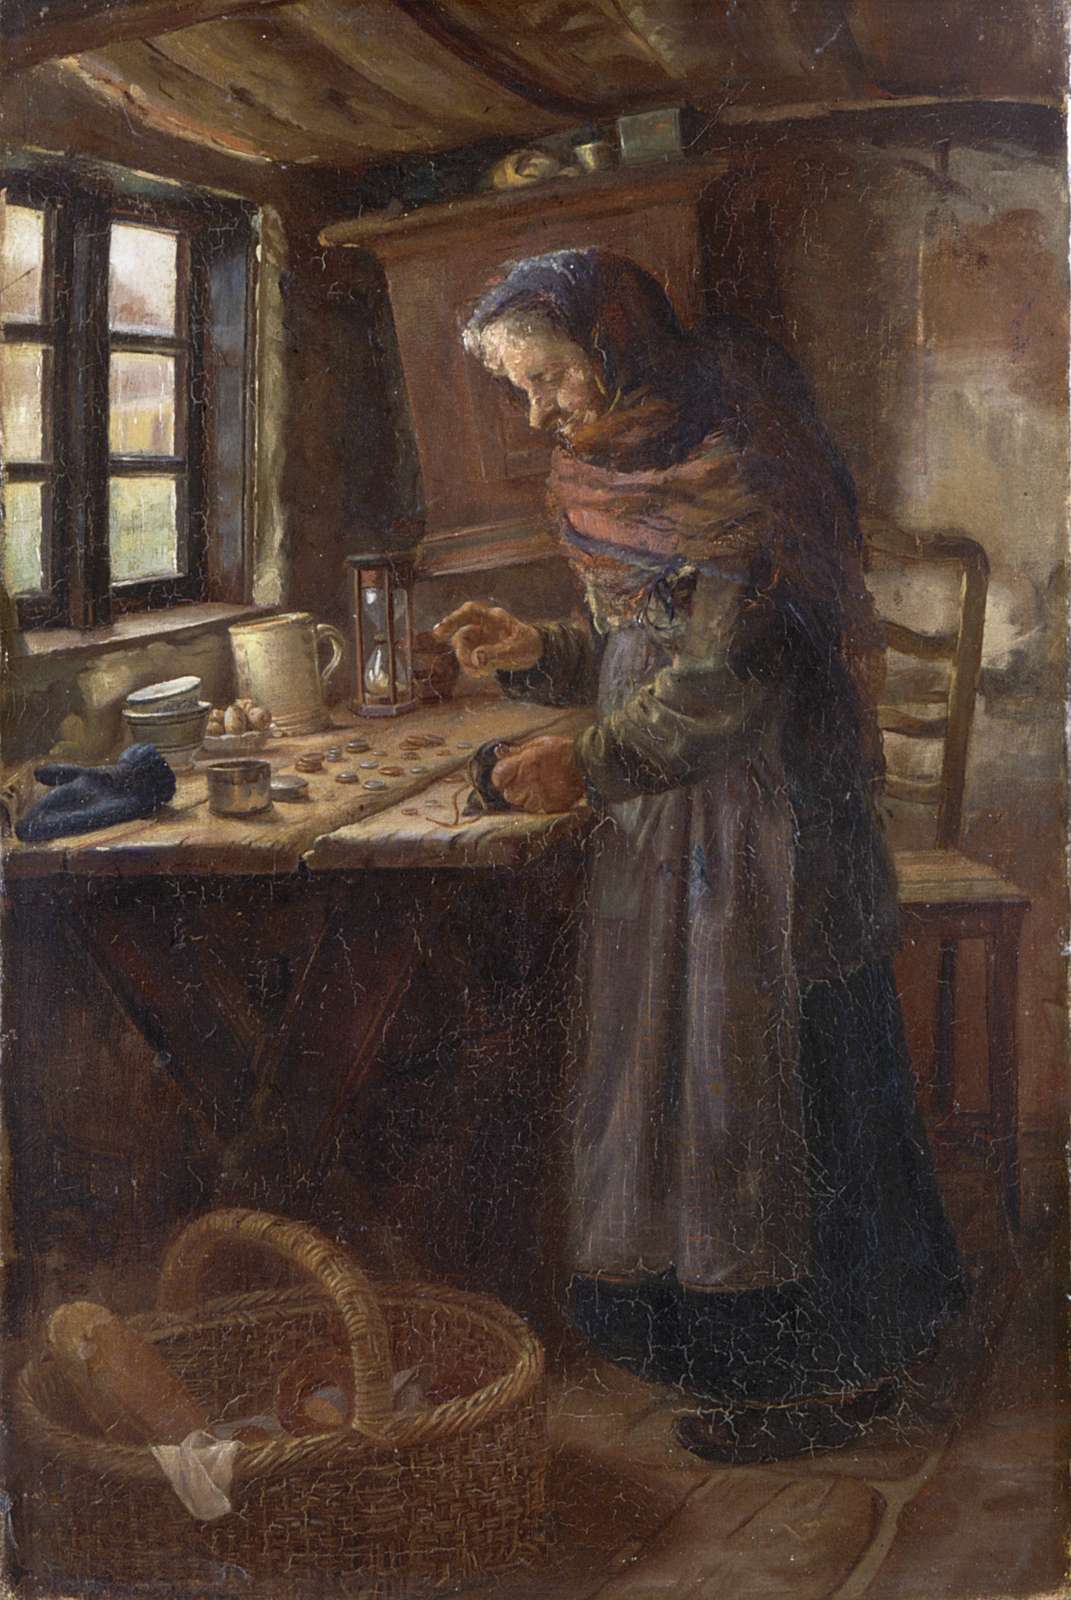 Anna Ancher: ” Stine Bollerhus tæller de ved salg af hvedebrød indvundne penge”. (1879). Skagens Kunstmuseer